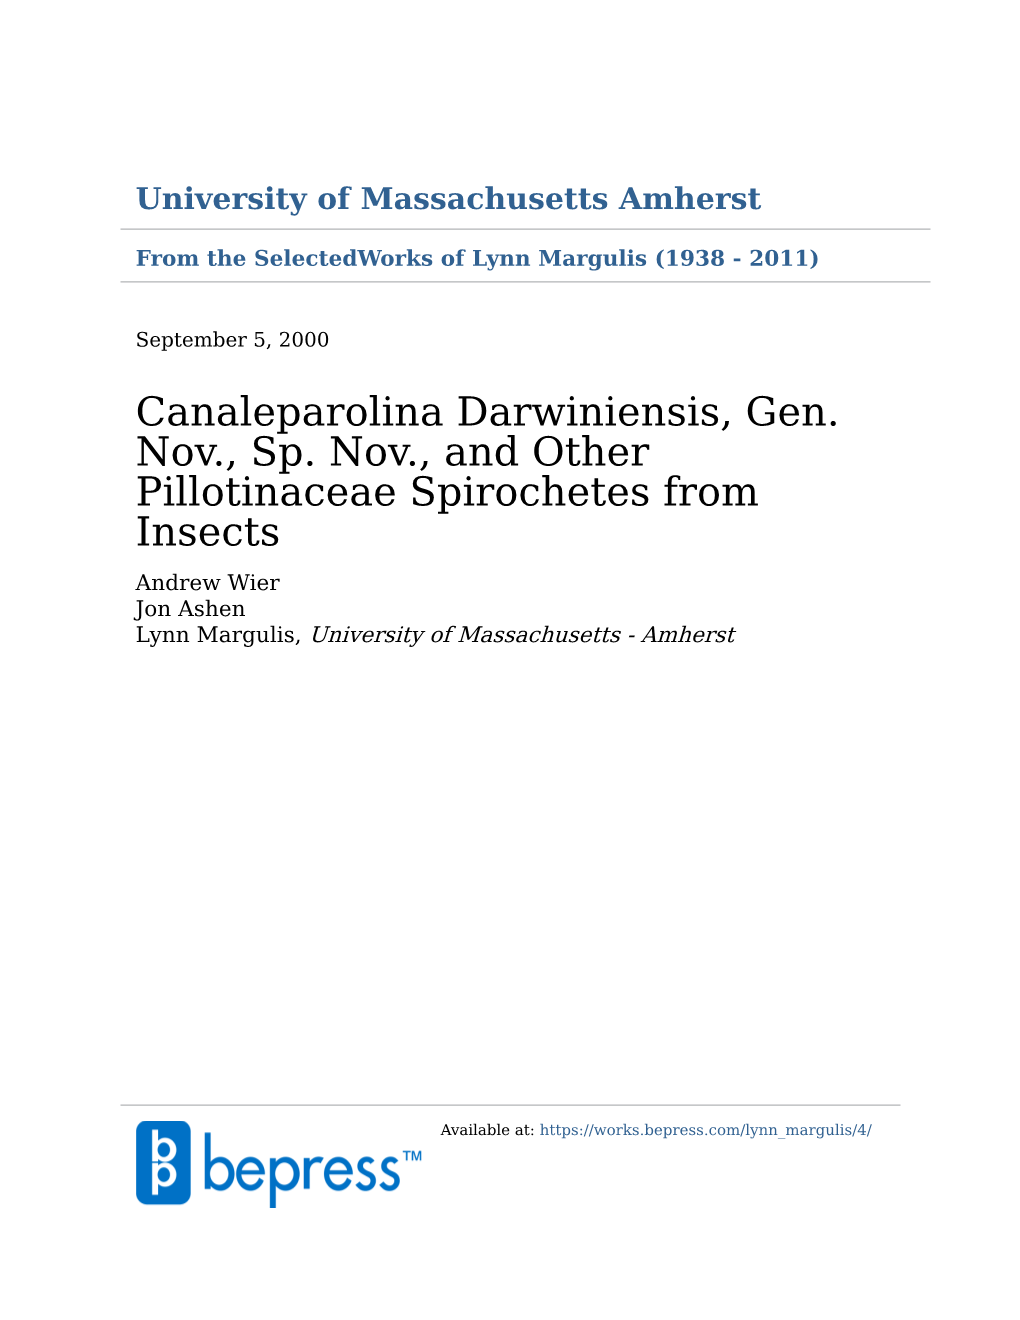 Canaleparolina Darwiniensis, Gen. Nov., Sp. Nov., and Other